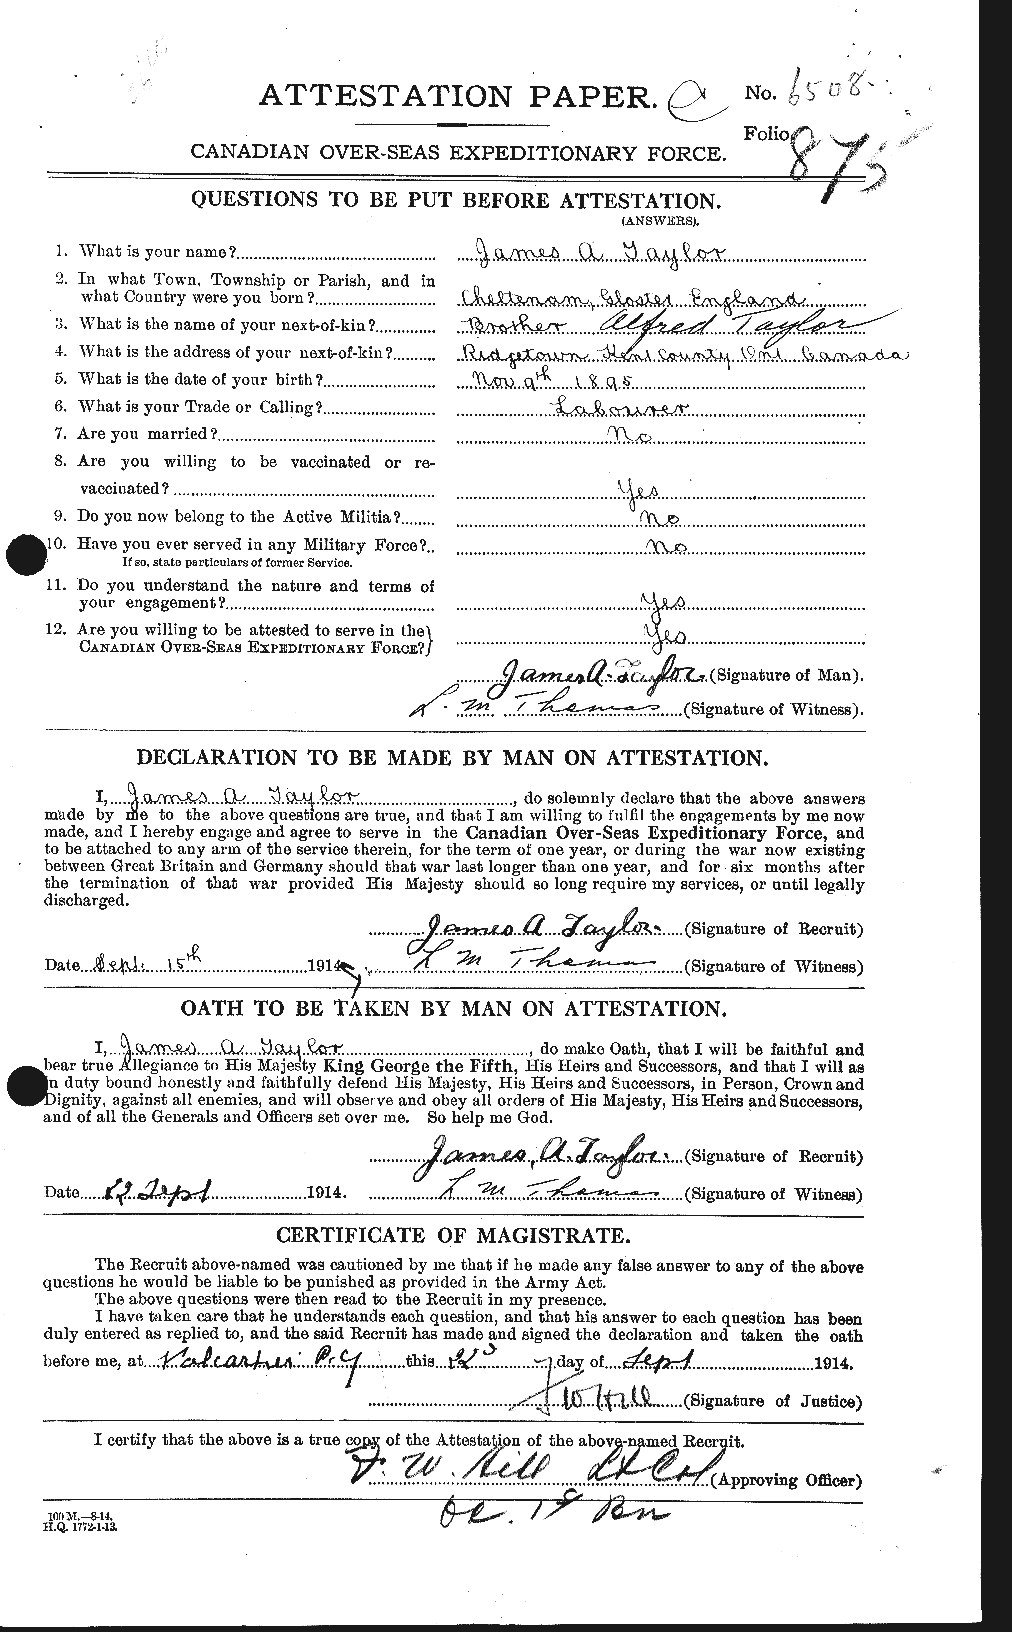 Dossiers du Personnel de la Première Guerre mondiale - CEC 626900a